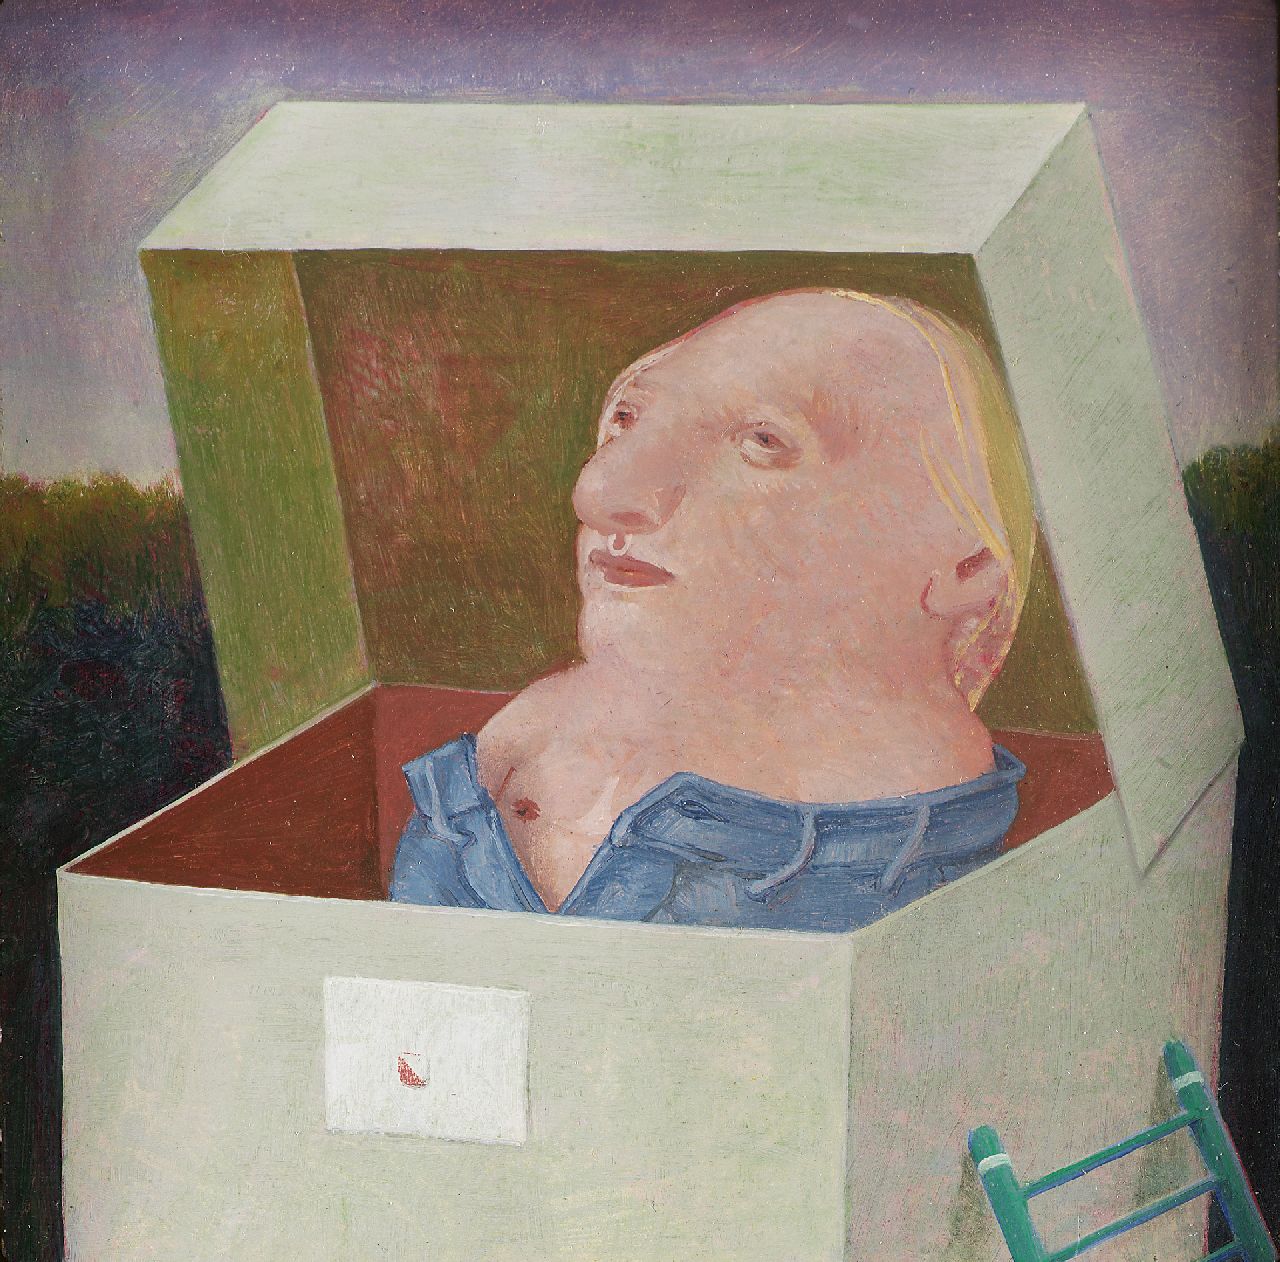 Poppel P.A.T. van | Petrus Antonius Theodorus 'Peter' van Poppel, Figuur in een doos, olieverf op papier op paneel 10,0 x 10,0 cm, gesigneerd verso en verso gedateerd 1972